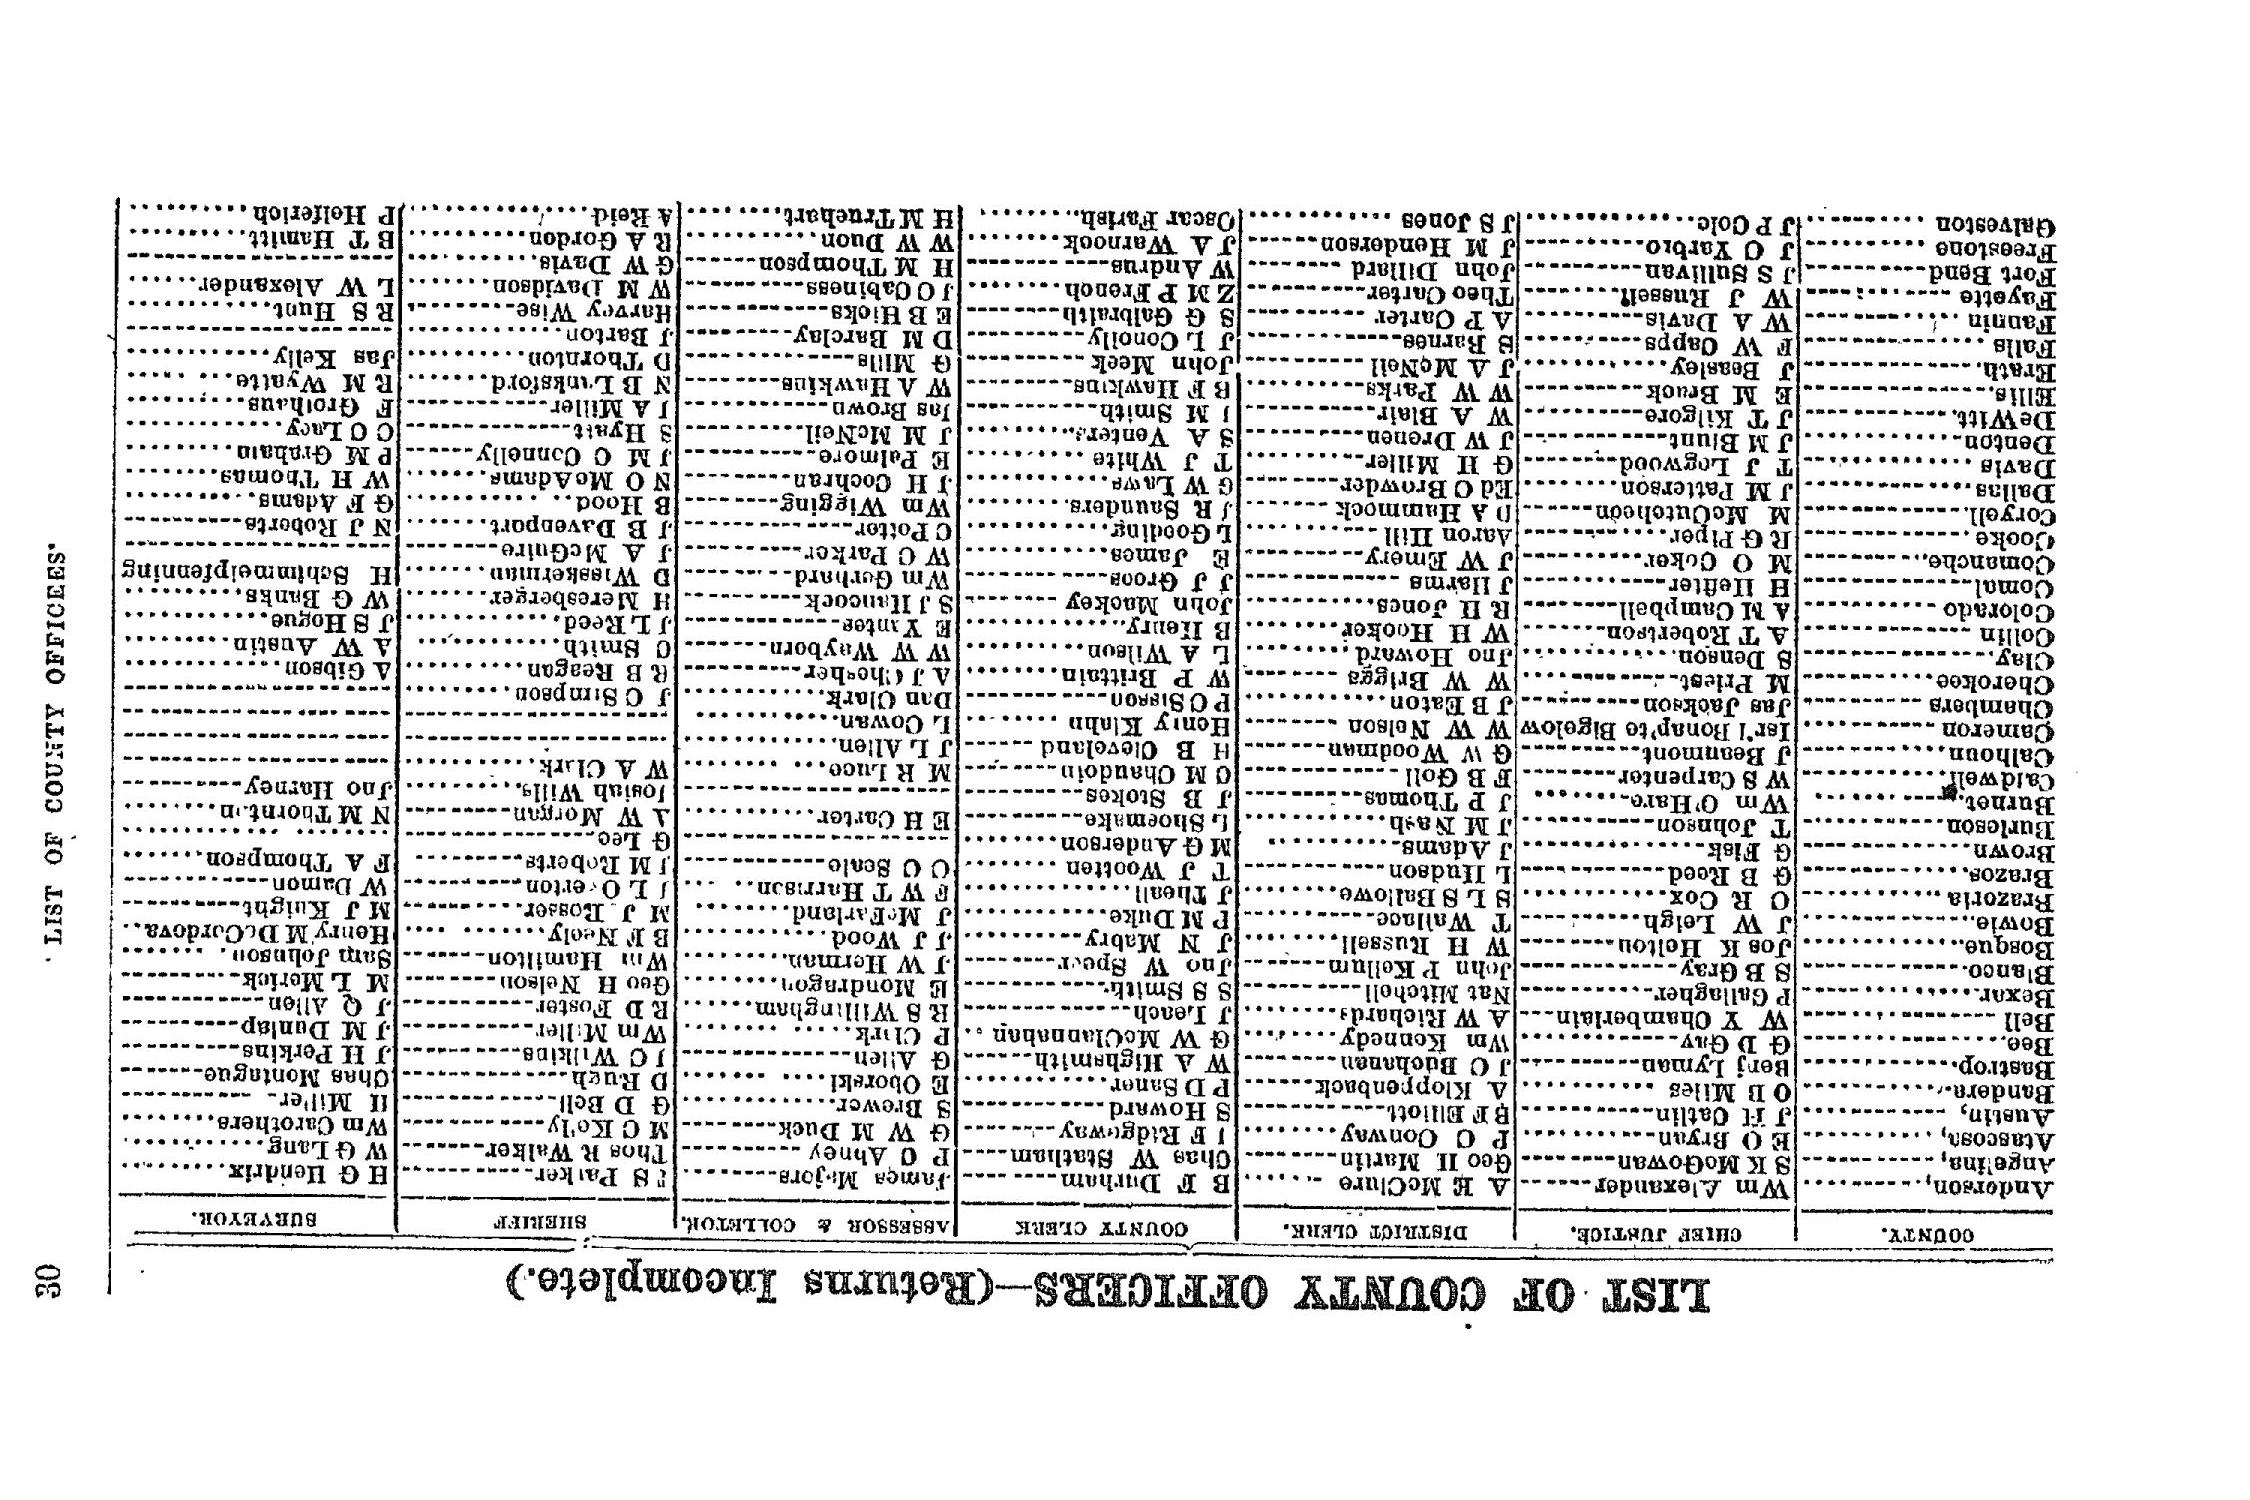 The Texas Almanac for 1864
                                                
                                                    30
                                                